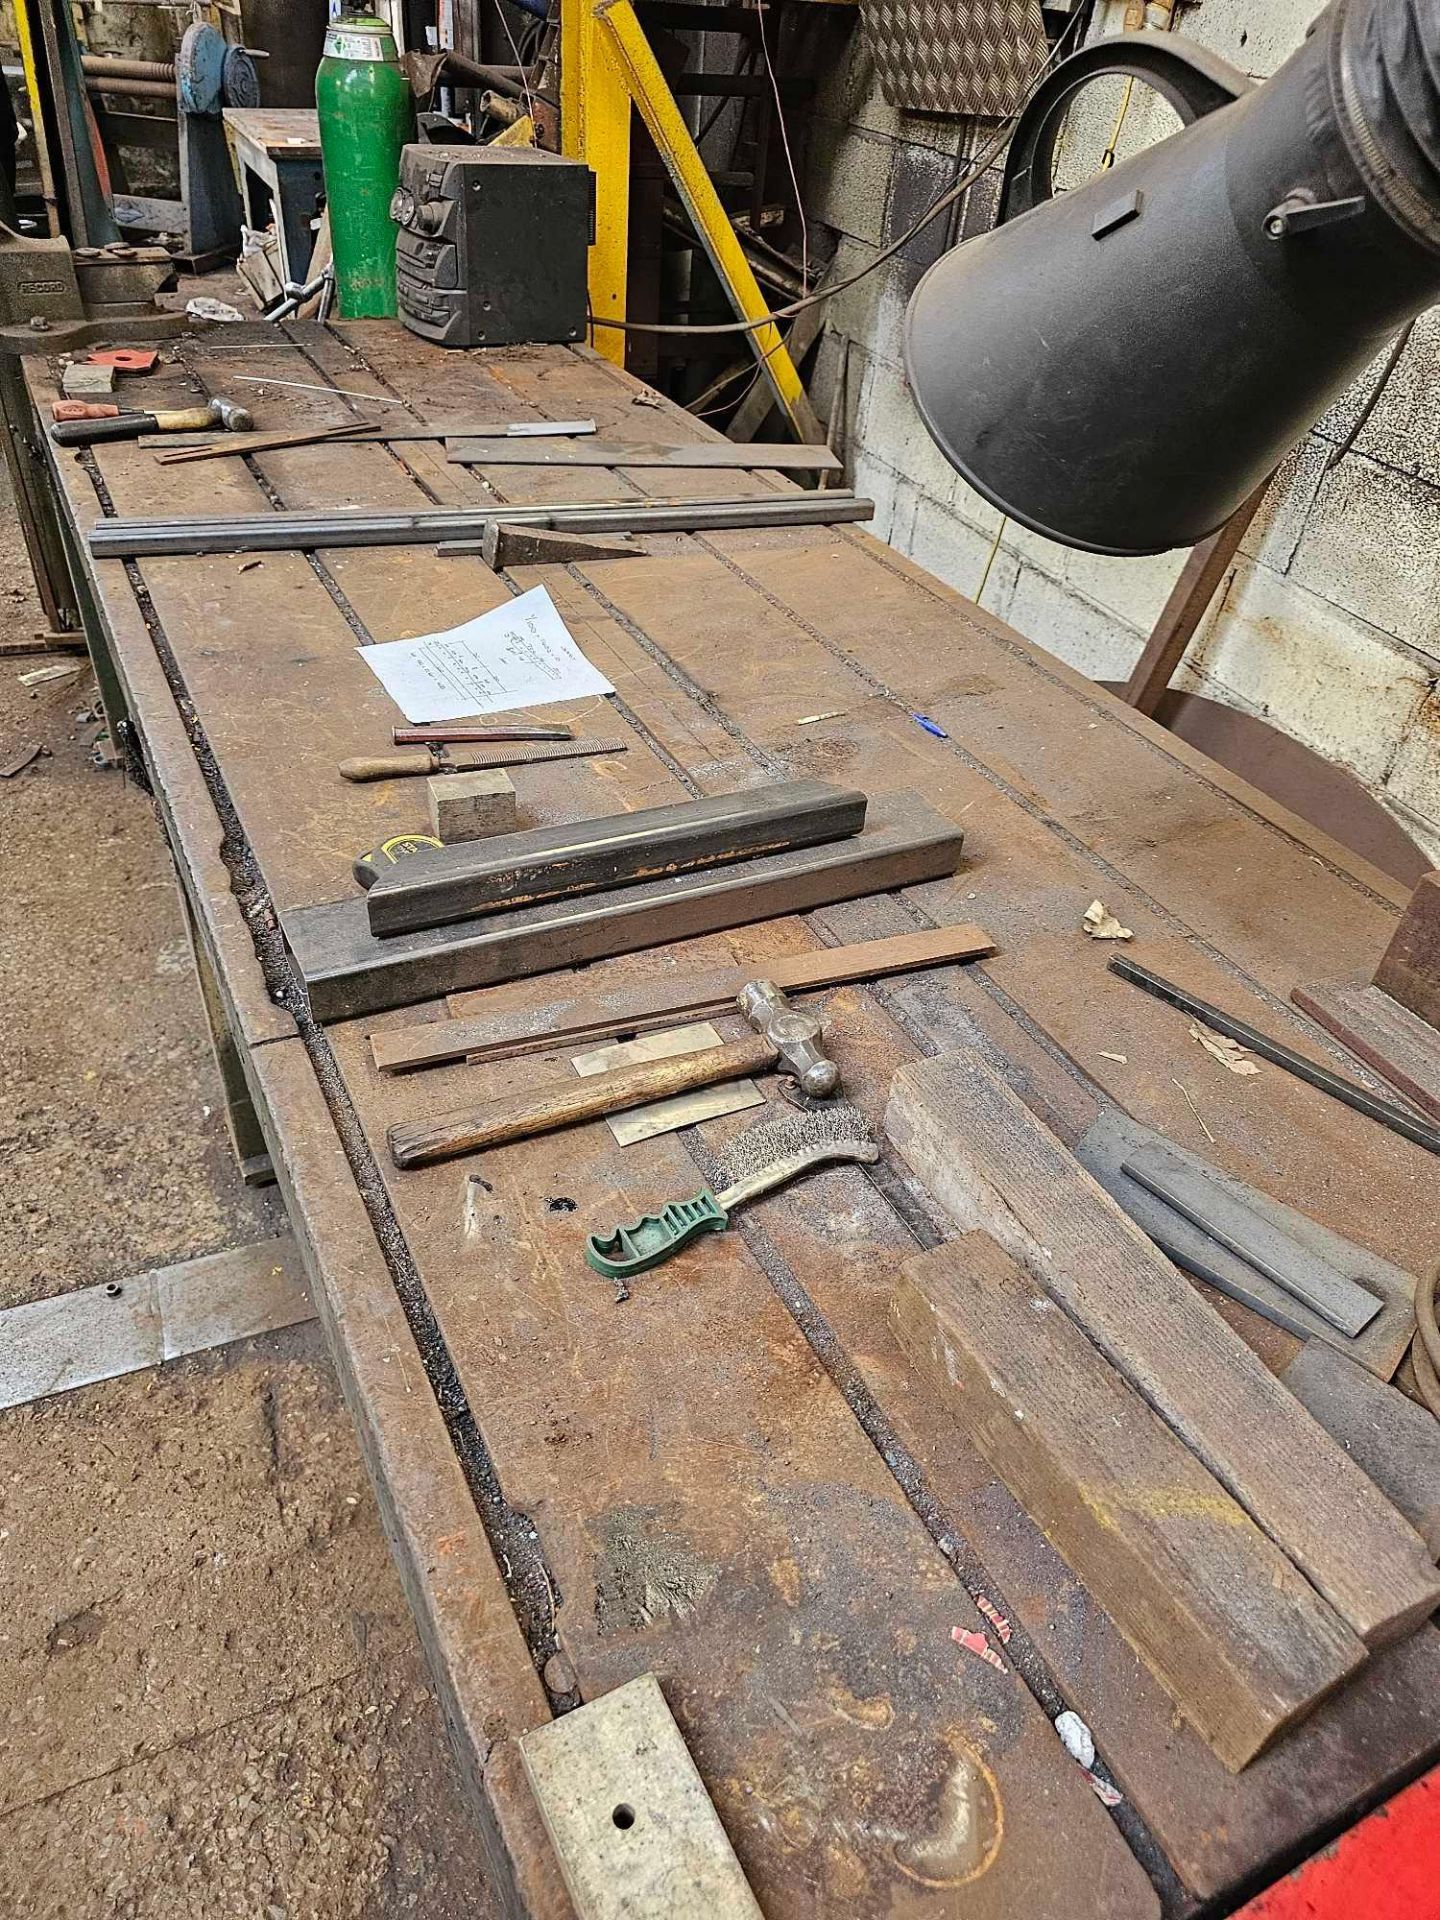 Cast Steel Engineers Marking Out Work Bench 305 x 110 x 89cm Weight 1600kg - Bild 3 aus 5